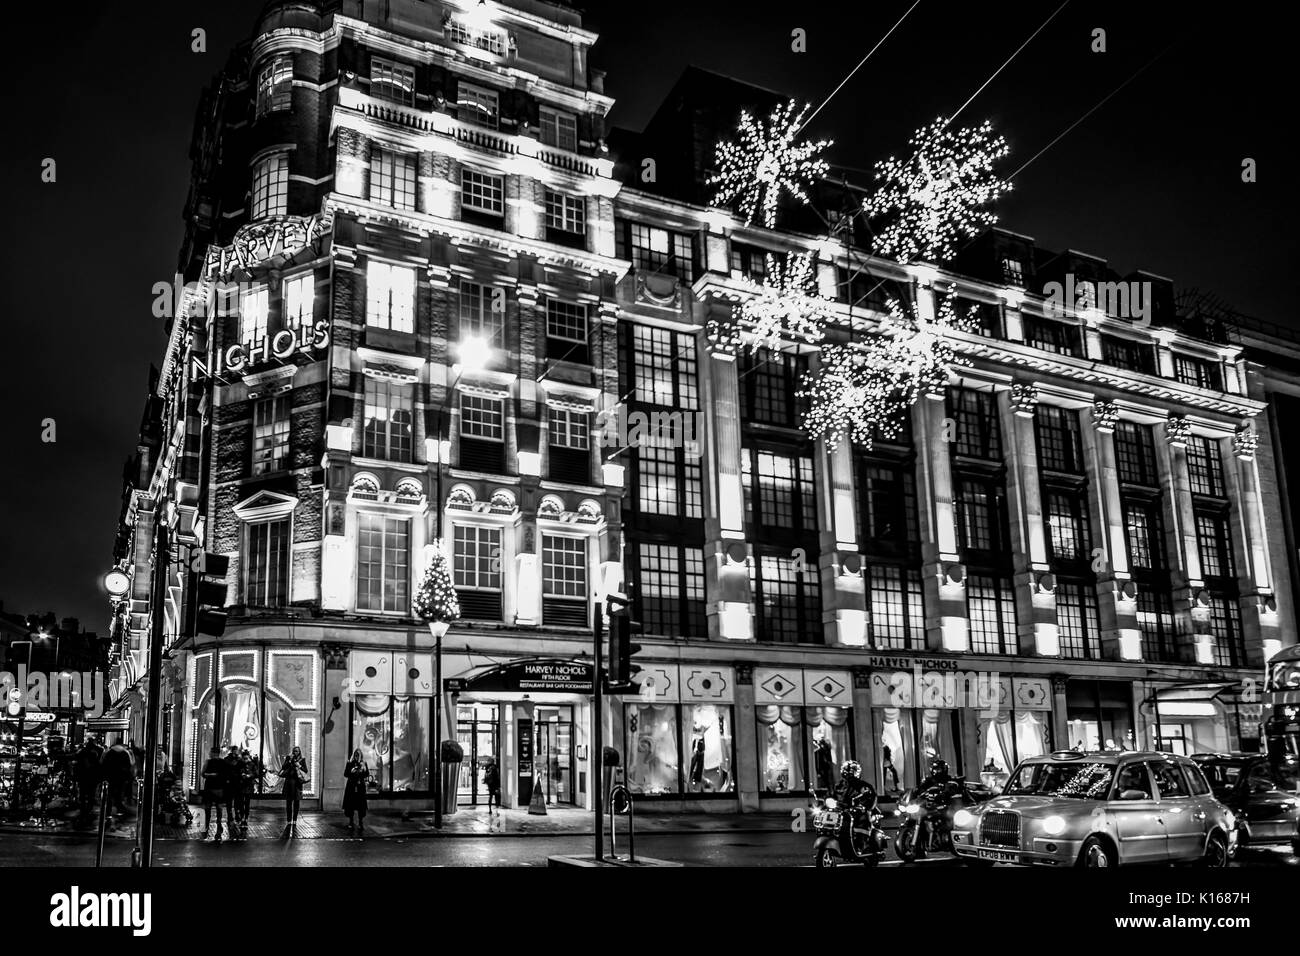 Merveilleux magasin Harvey Nichols à Londres Knightsbridge - LONDRES / ANGLETERRE - 6 DÉCEMBRE 2017 Banque D'Images